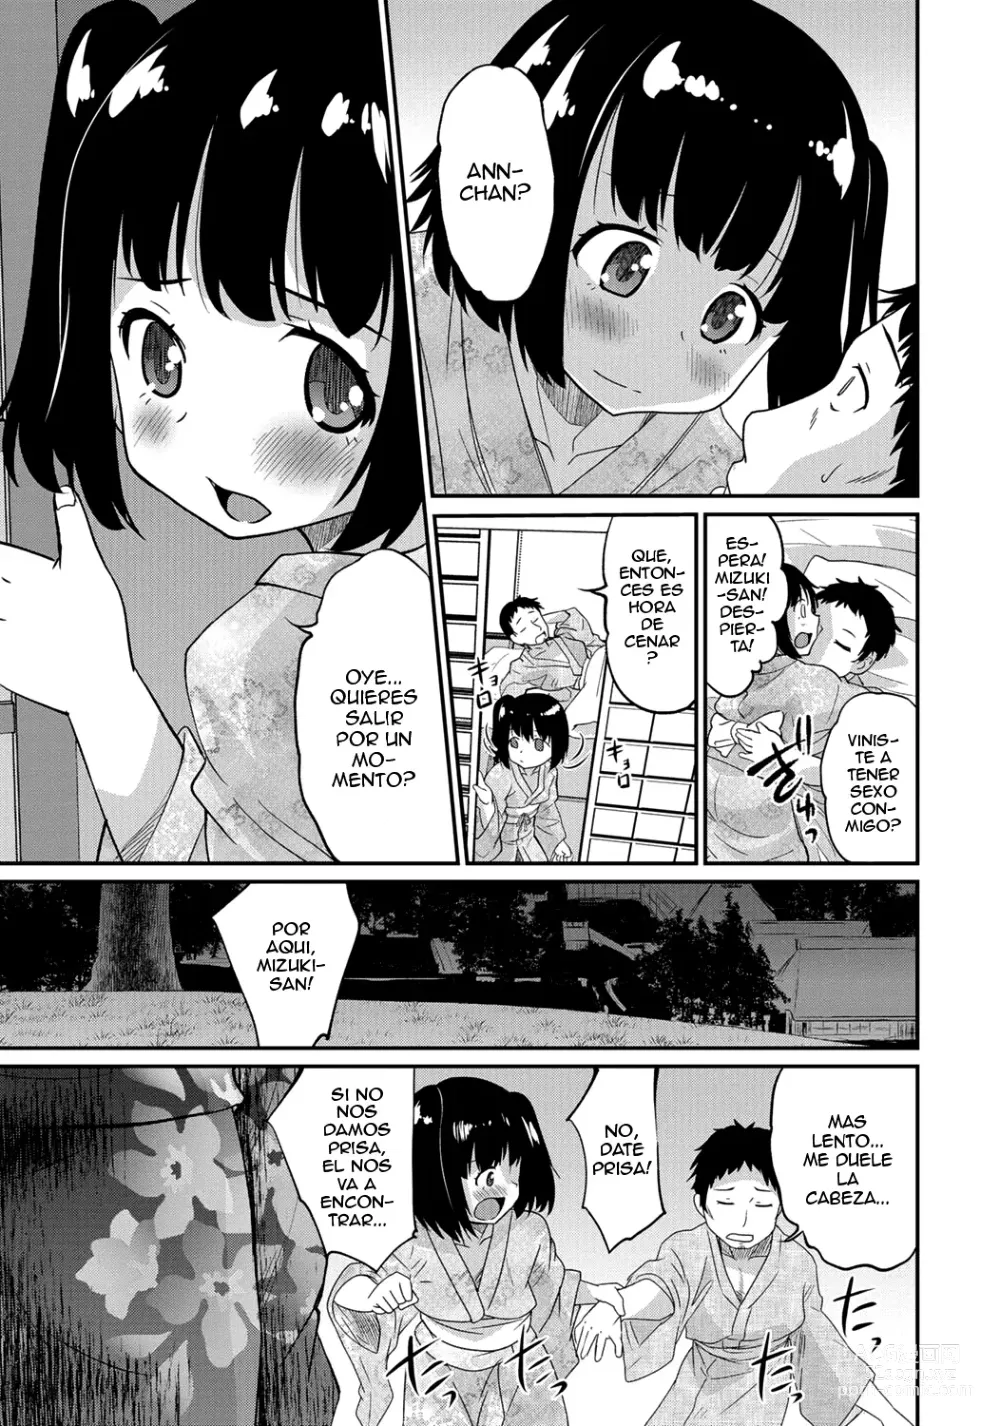 Page 6 of manga Gekkan Web Otoko no Ko-llection! S Vol. 06